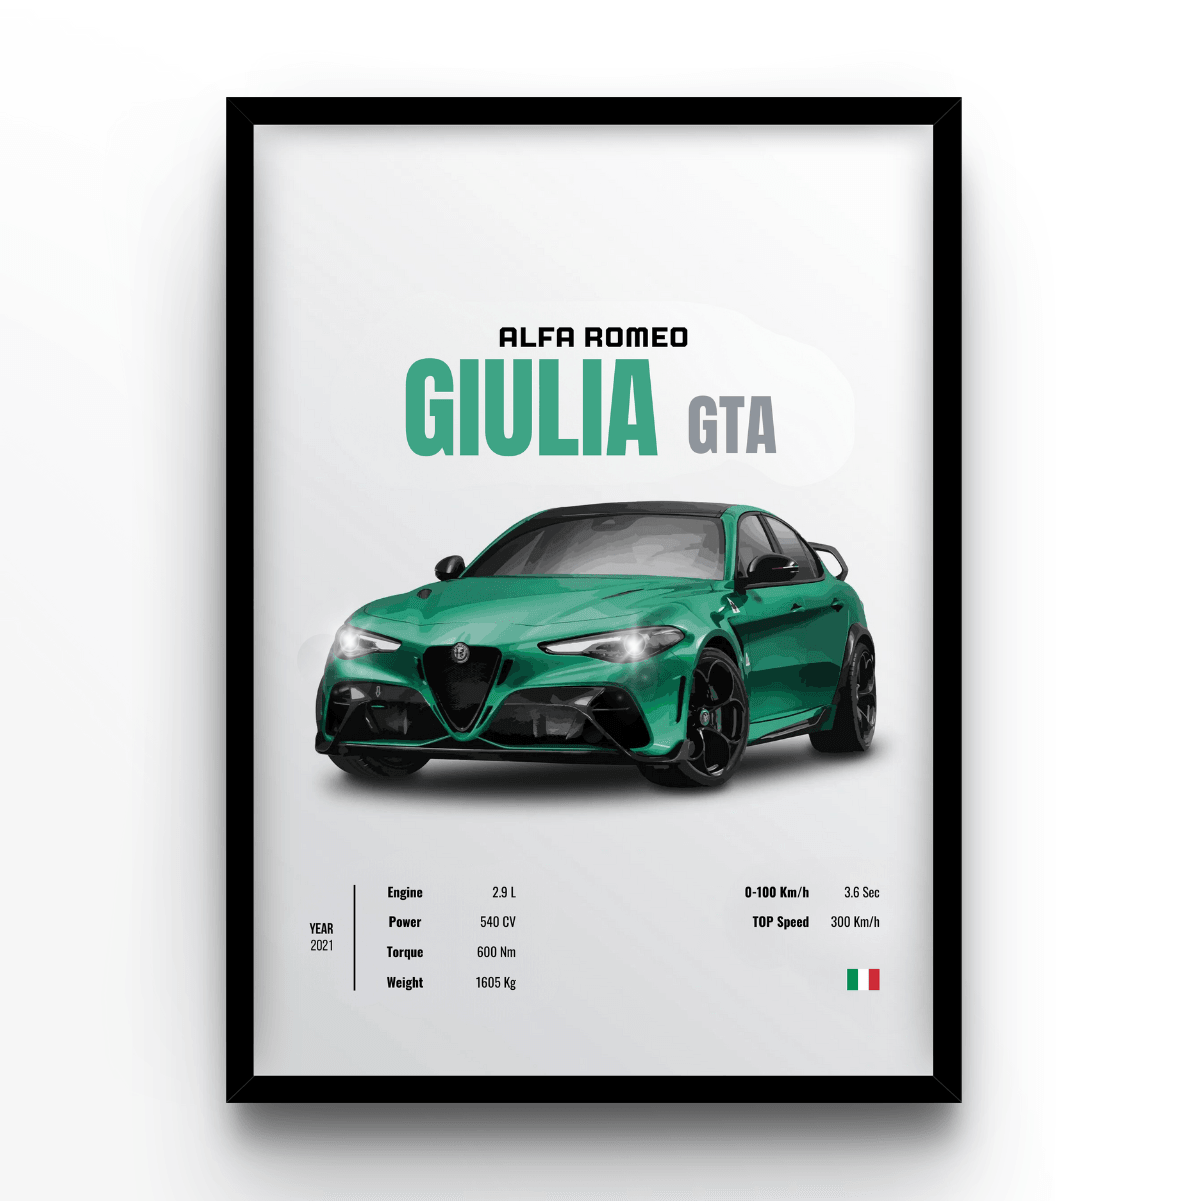 GIULIA GTA - A4, A3, A2 Posters Base - Poster Print Shop / Art Prints / PostersBase